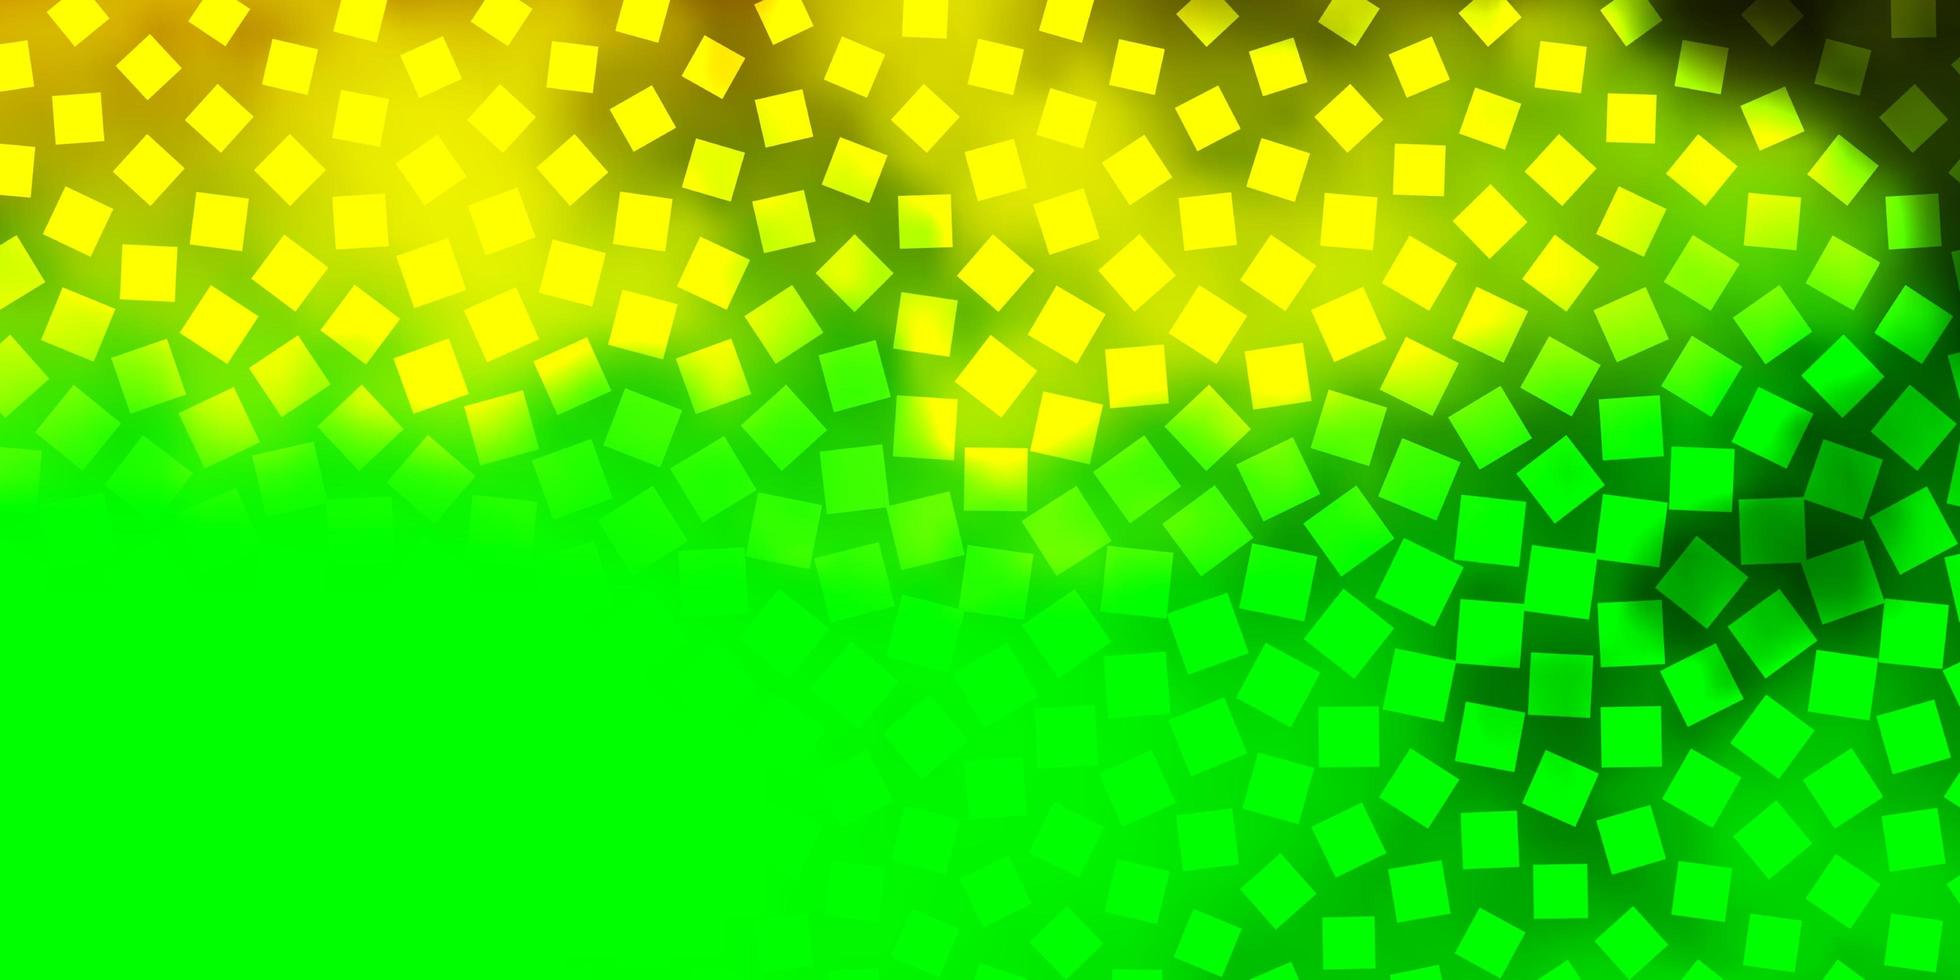 modello vettoriale verde chiaro, giallo con rettangoli.